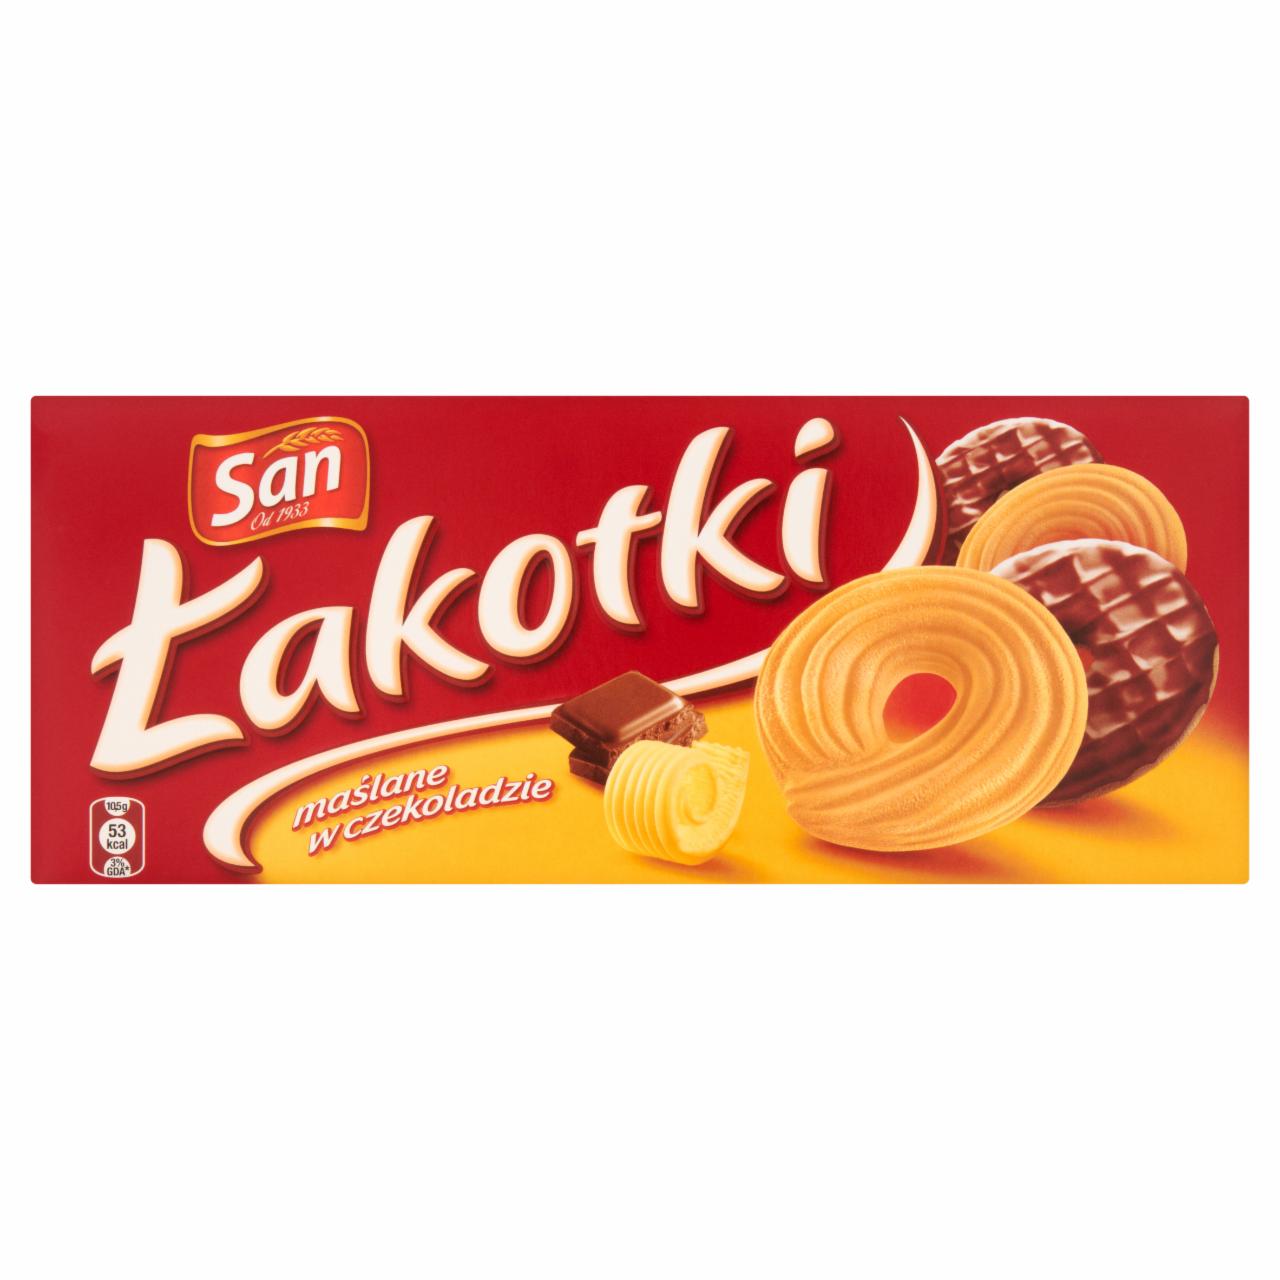 Zdjęcia - San Łakotki maślane w czekoladzie 190 g